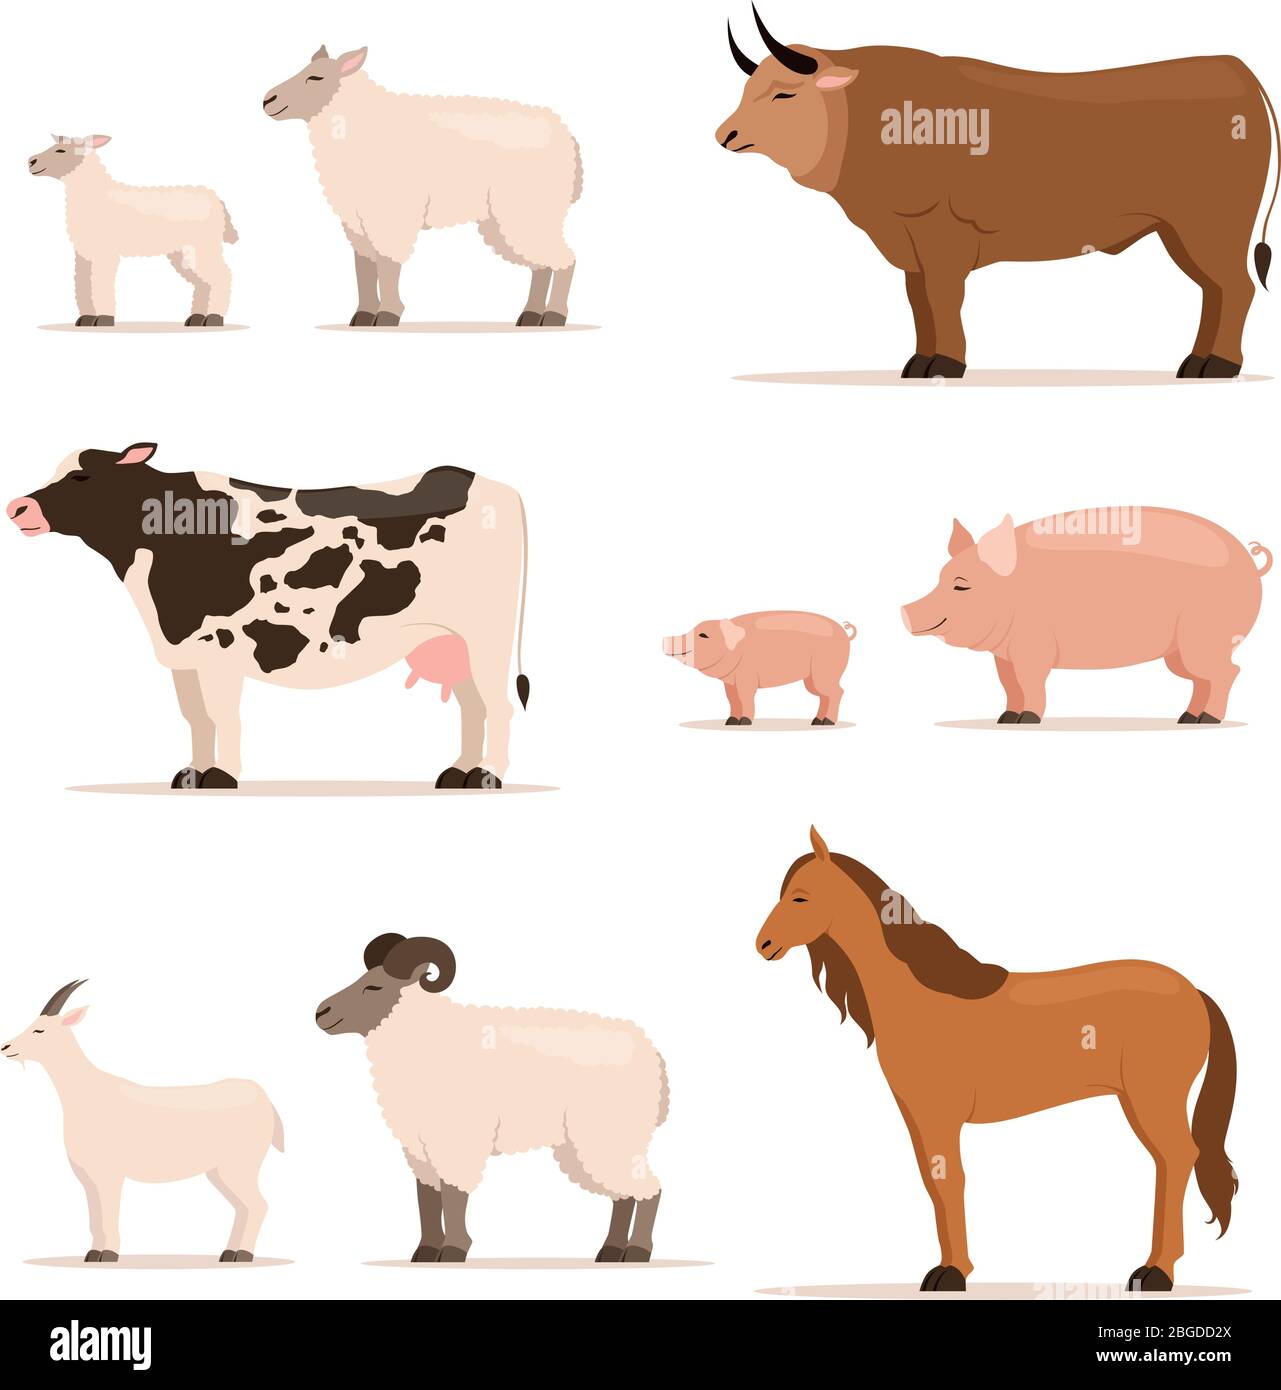 Animali in fattoria. Agnello, maialino, mucca e pecora, capra. Illustrazioni vettoriali in stile cartoon Illustrazione Vettoriale